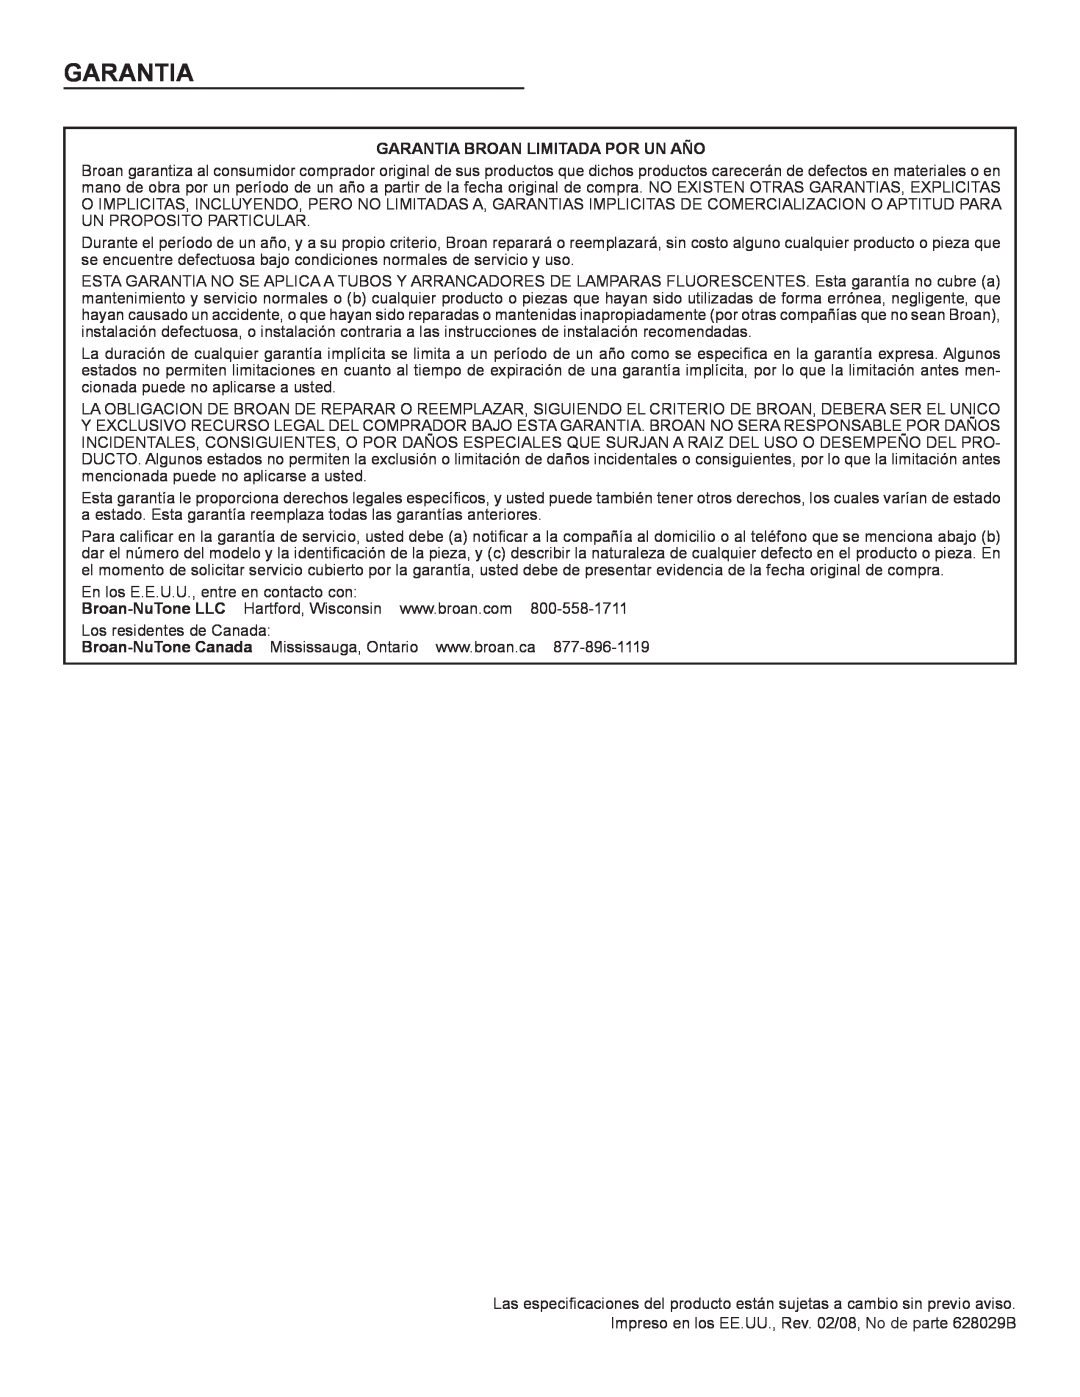 Broan Ql100 Series installation instructions Garantia Broan Limitada Por Un Año 